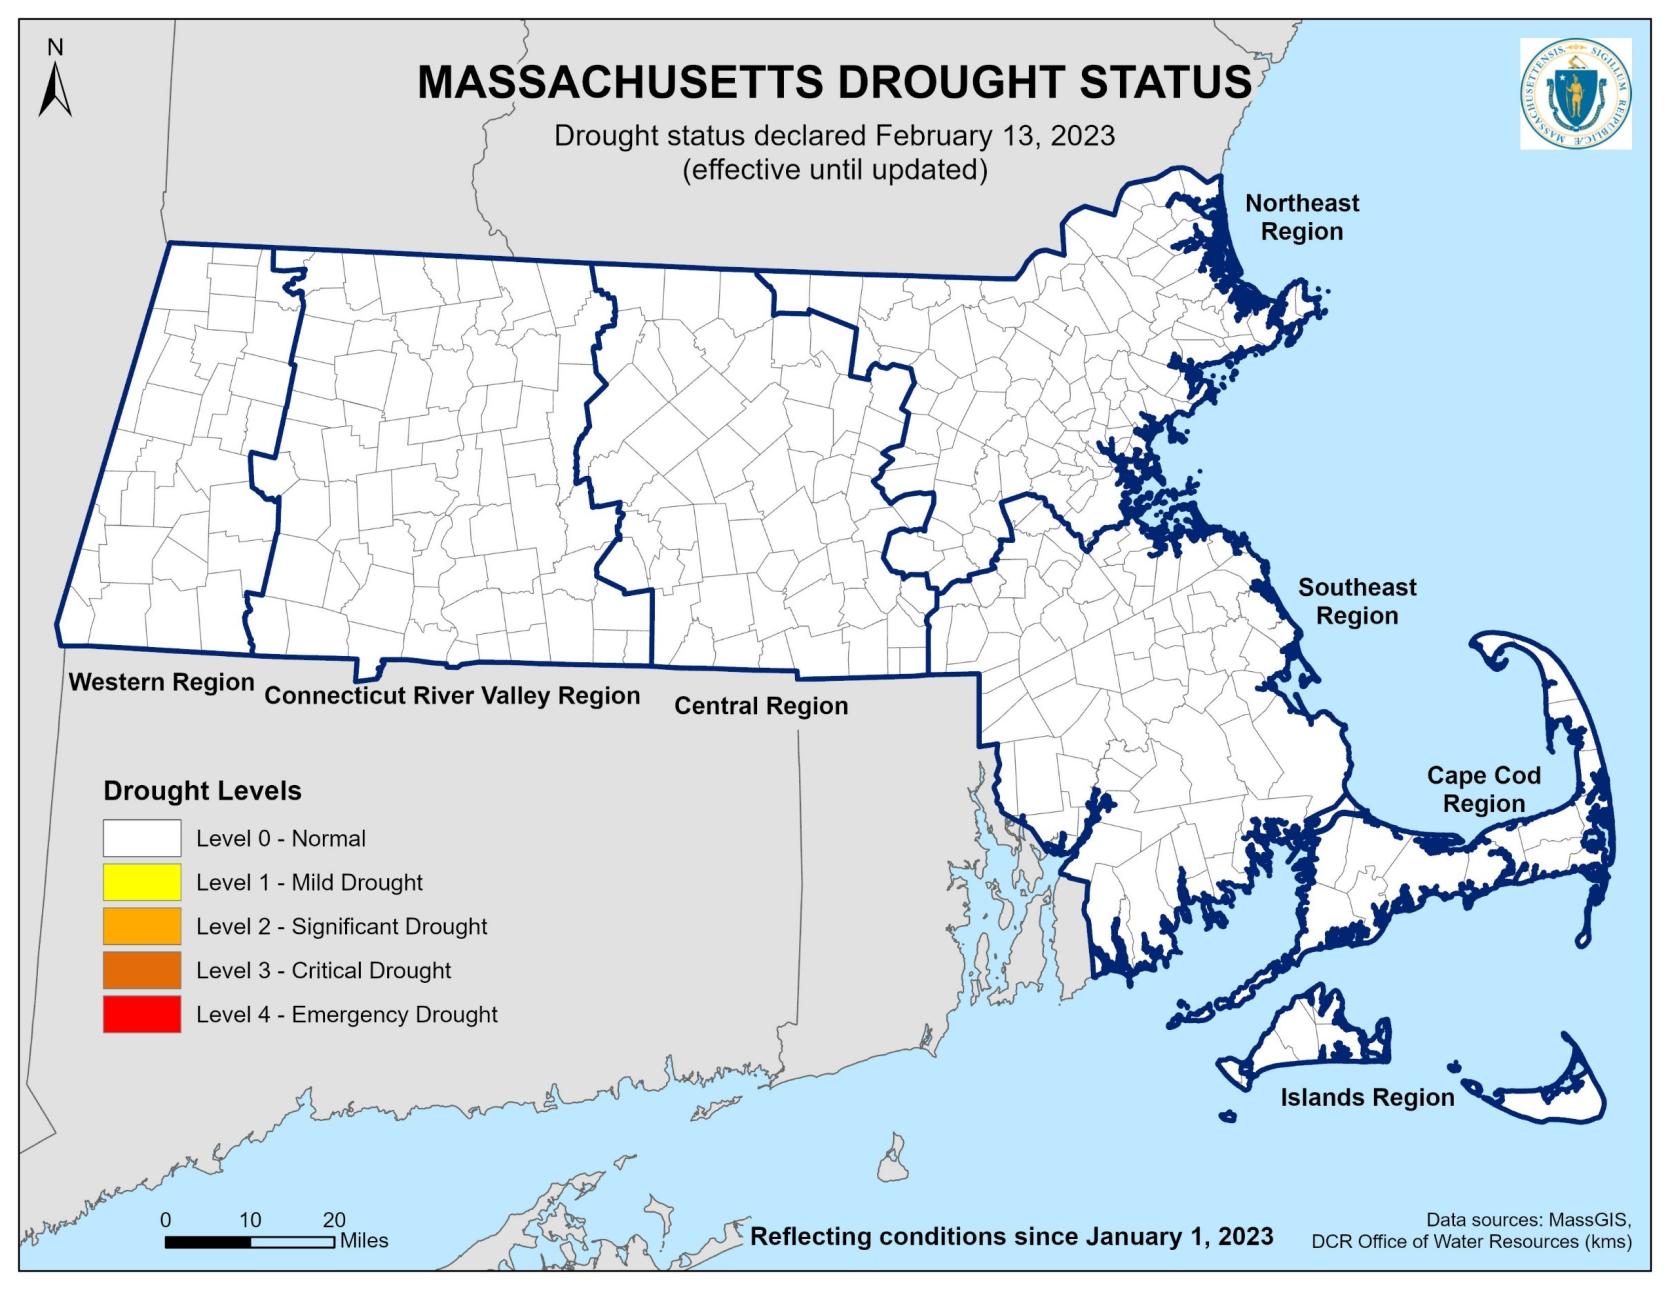 Massachusetts Drought Status 2.13.23